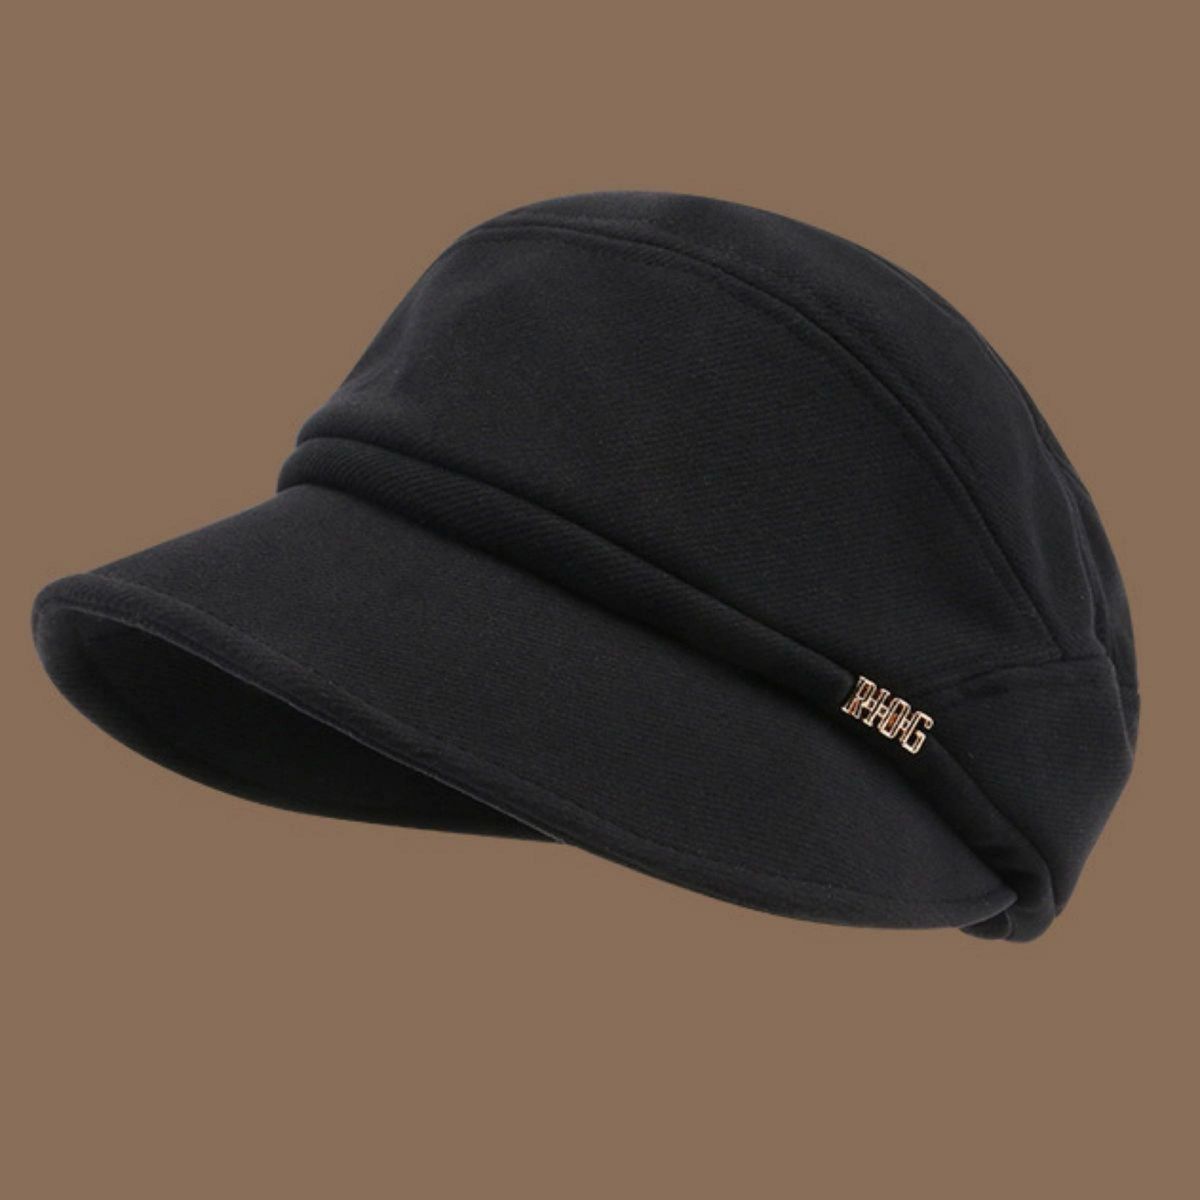 キャスケット 帽子UVカット 小顔 効果 帽子レディース  フリーサイズ 秋冬 防寒 保暖性 帽子 紫外線対策